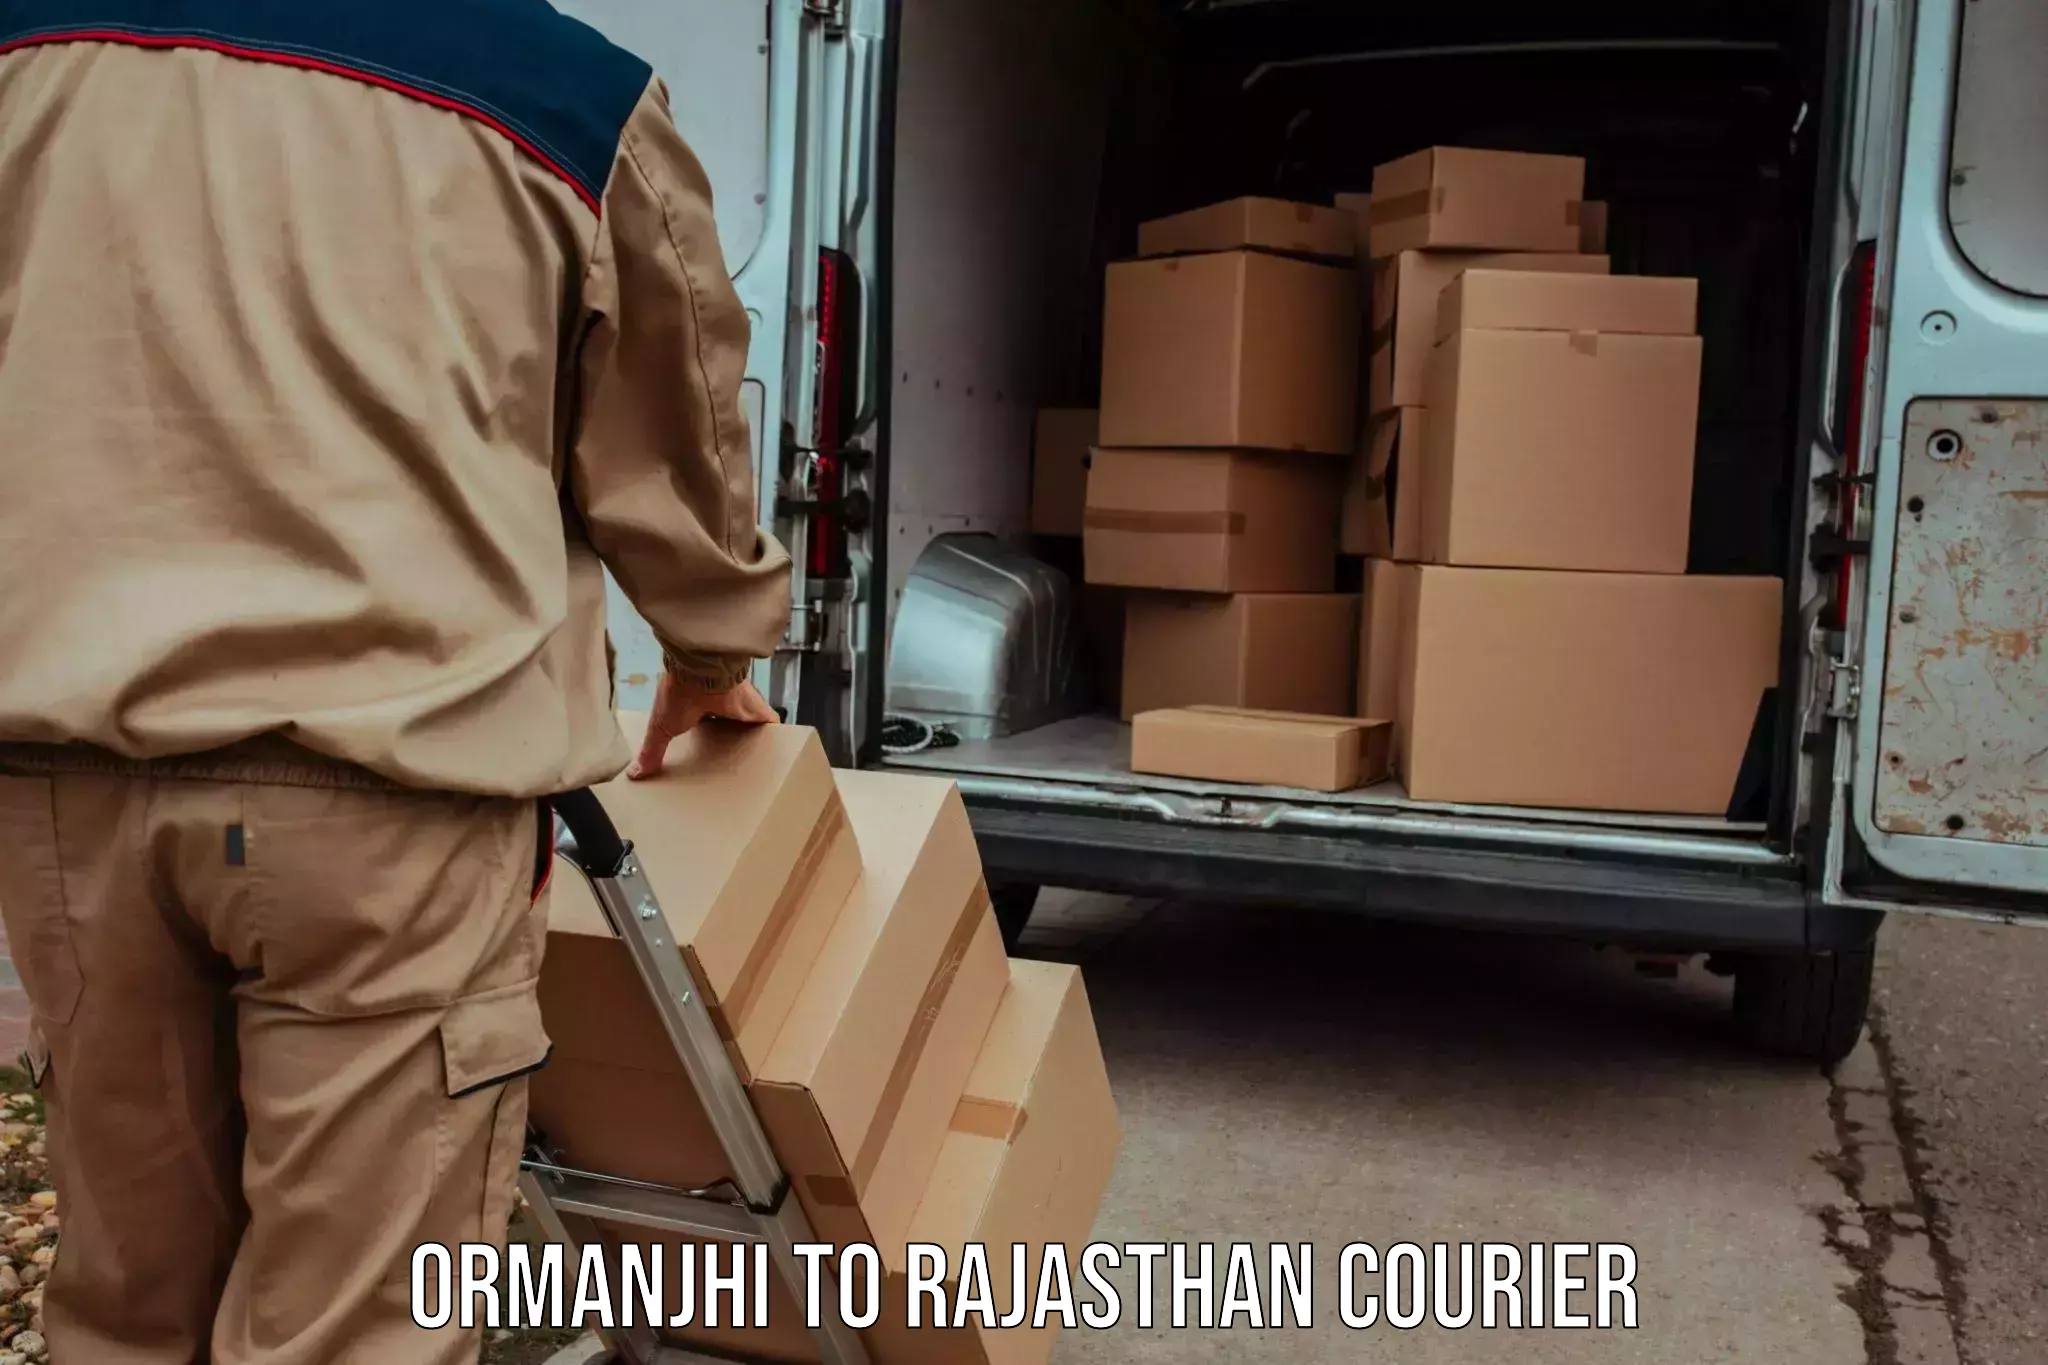 Courier service comparison Ormanjhi to Bari Dholpur